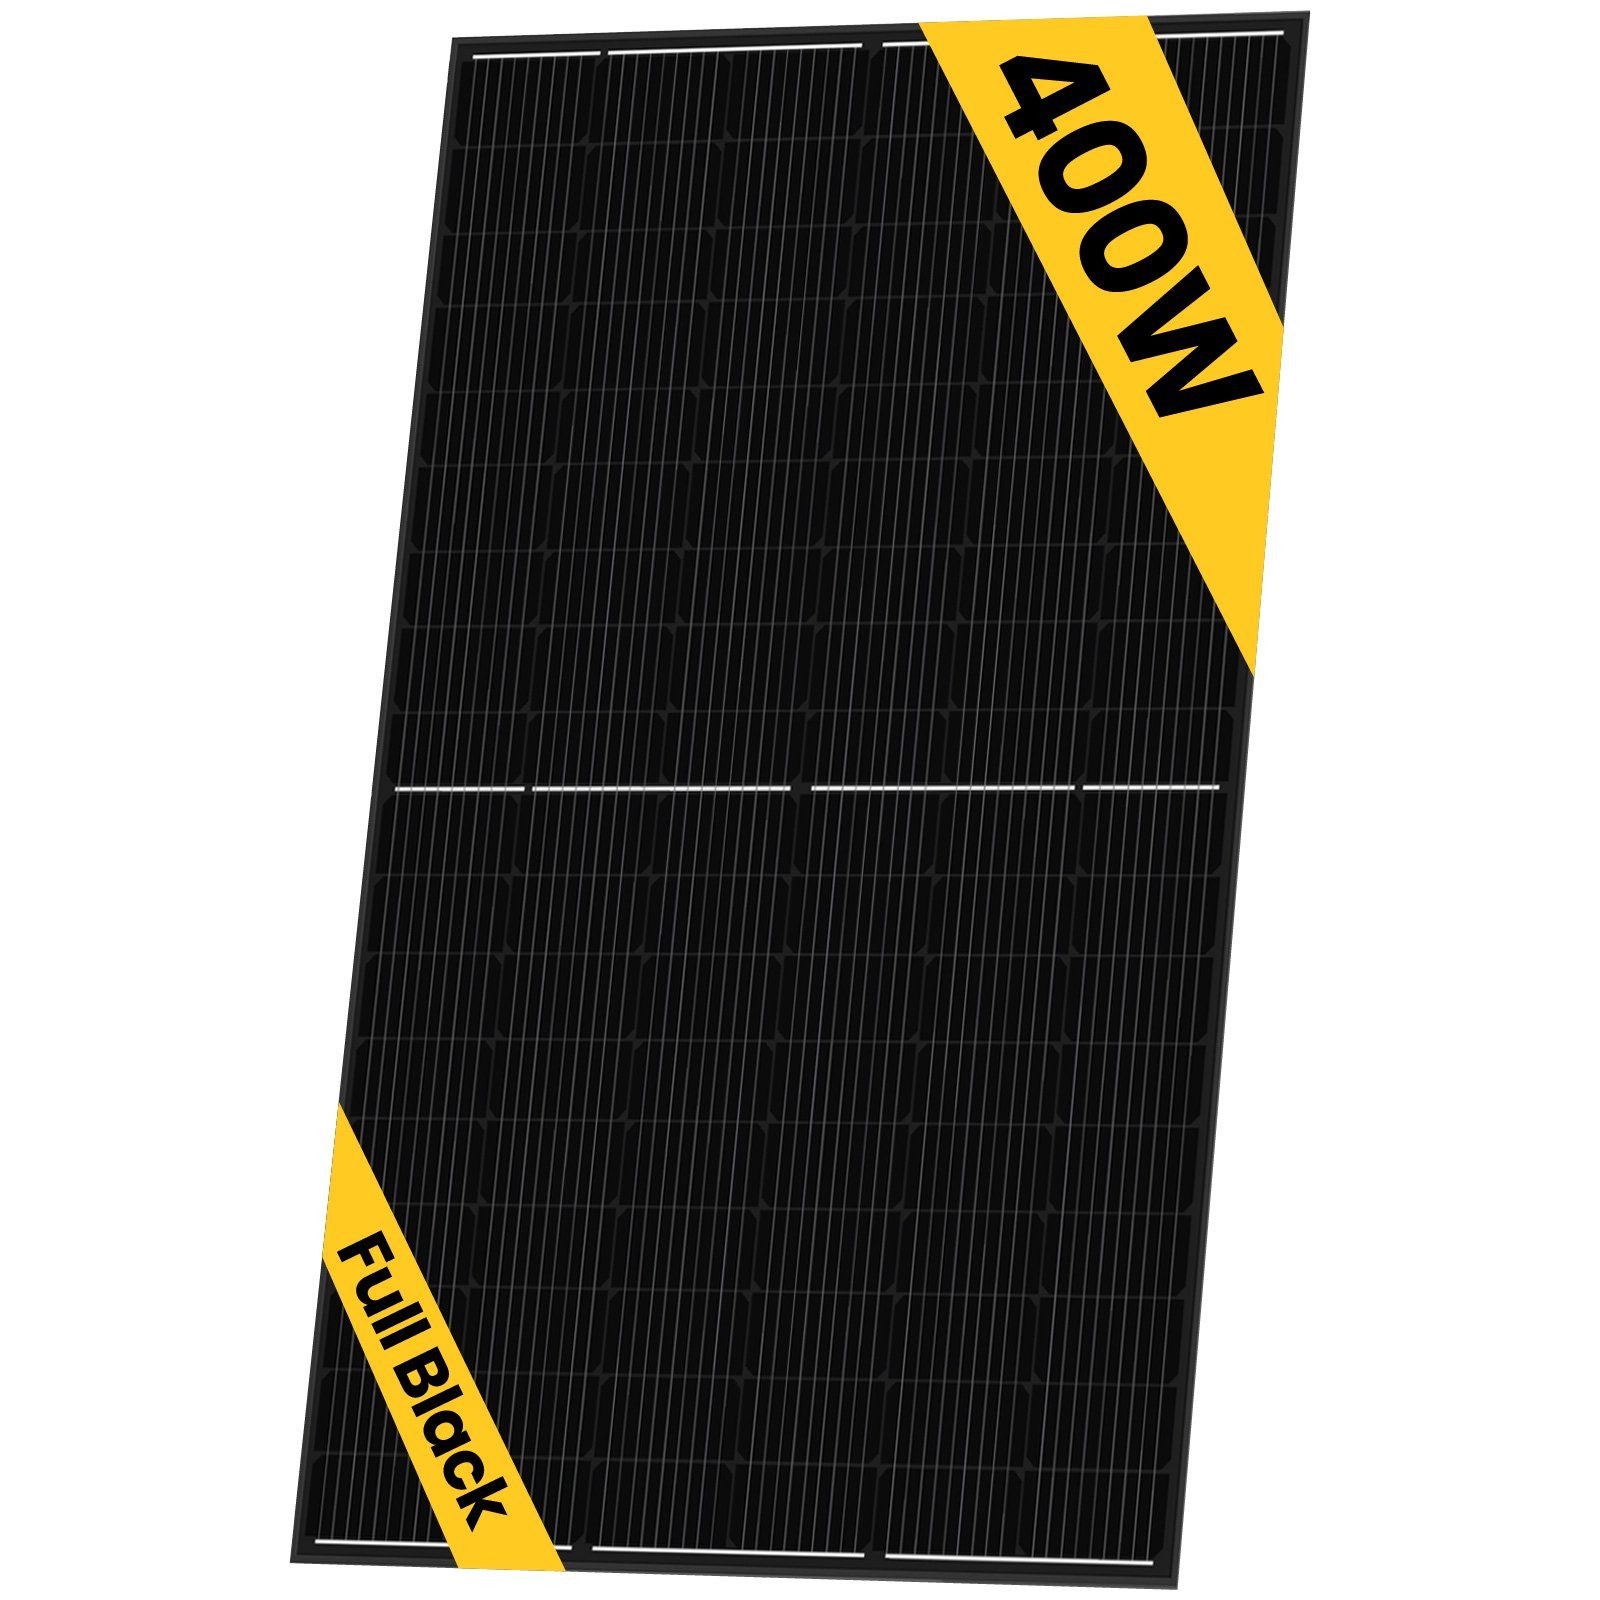 Stegpearl Solaranlage Sunpro 400 Watt Photovoltaik Hieff monokristalline Schwarz Solarmodul, Schwarz (Solarpanel), Wasserdichtigkeitsklasse IP68